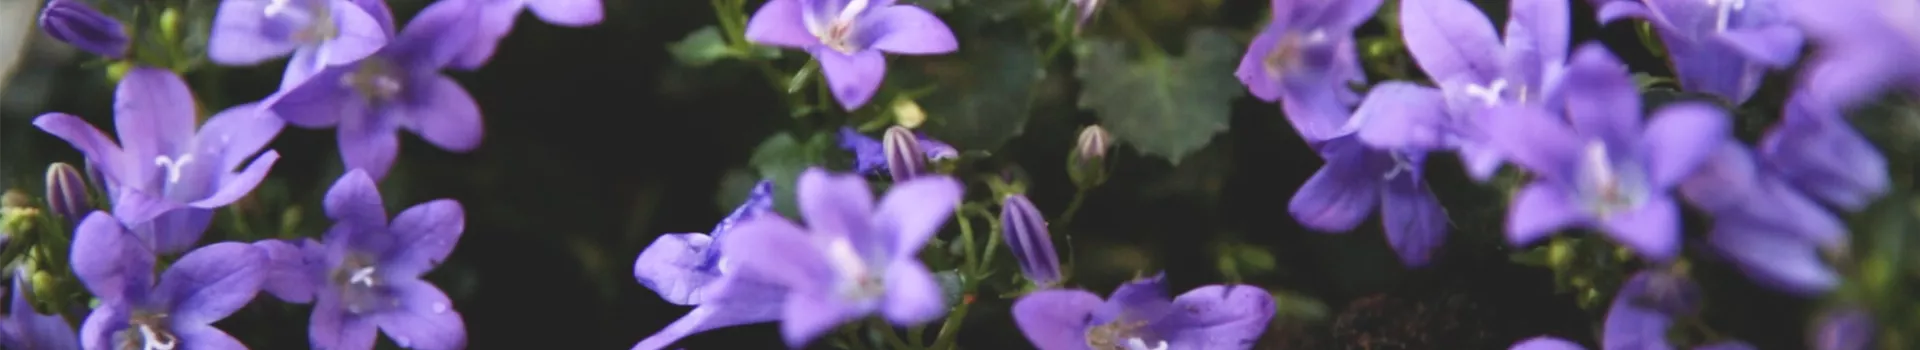 Dalmatiner-Polsterglockenblume - Einpflanzen im Garten (Thumbnail)